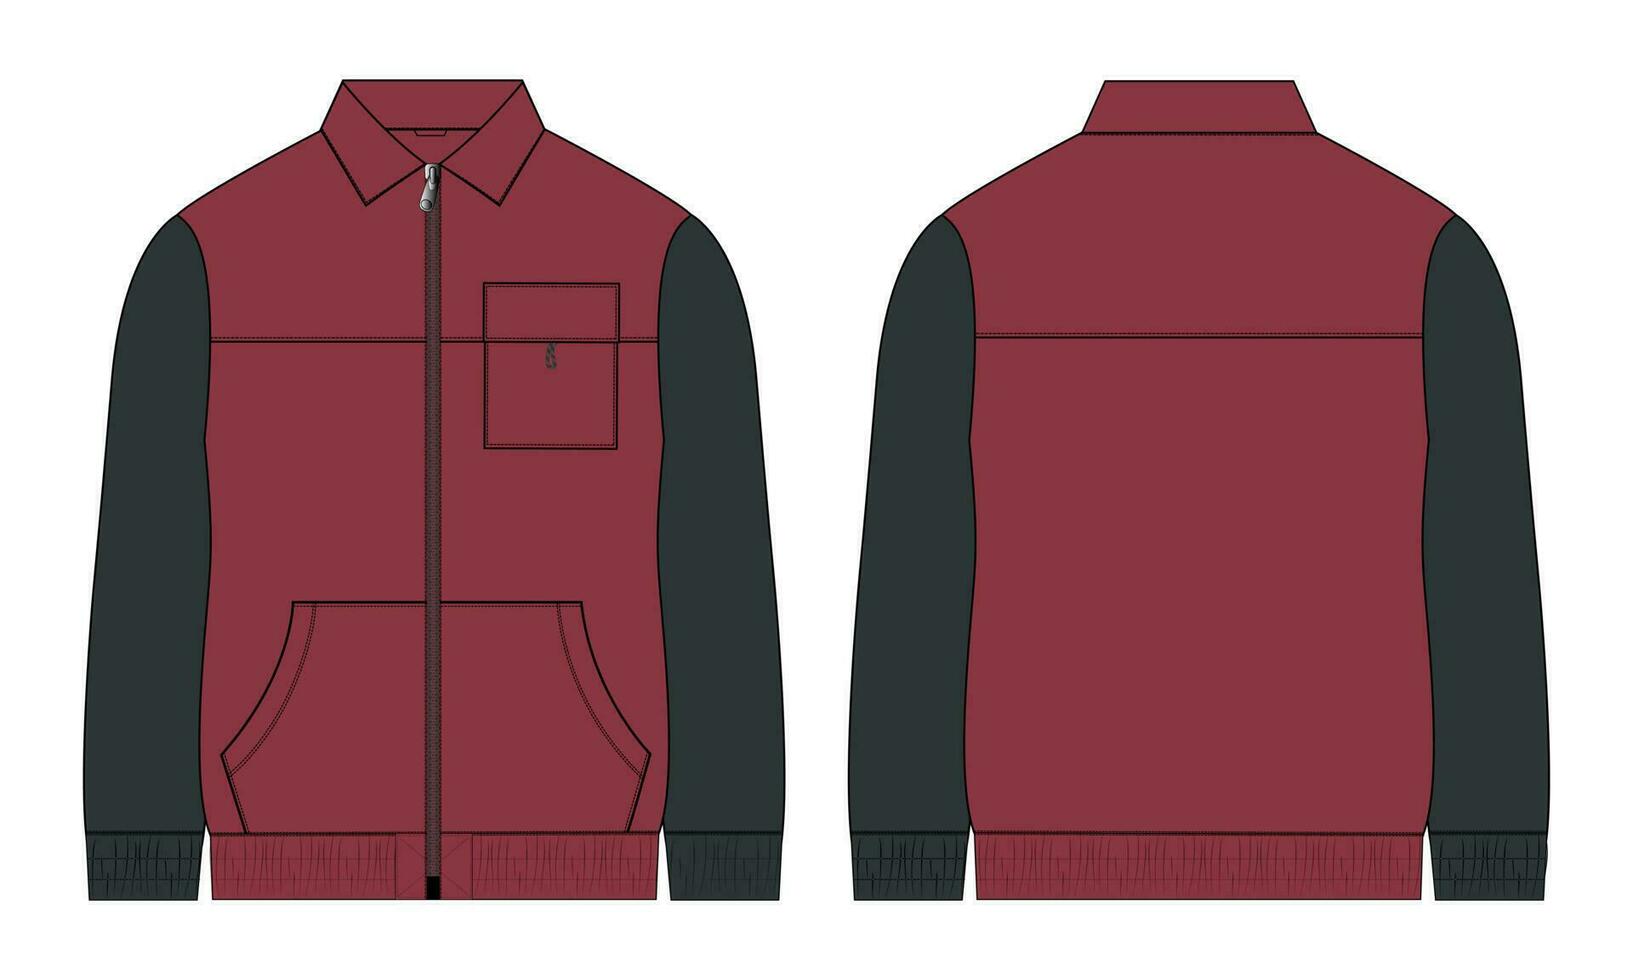 dos tono color largo manga chaqueta con bolsillo y cremallera técnico Moda plano bosquejo vector ilustración modelo frente y espalda puntos de vista